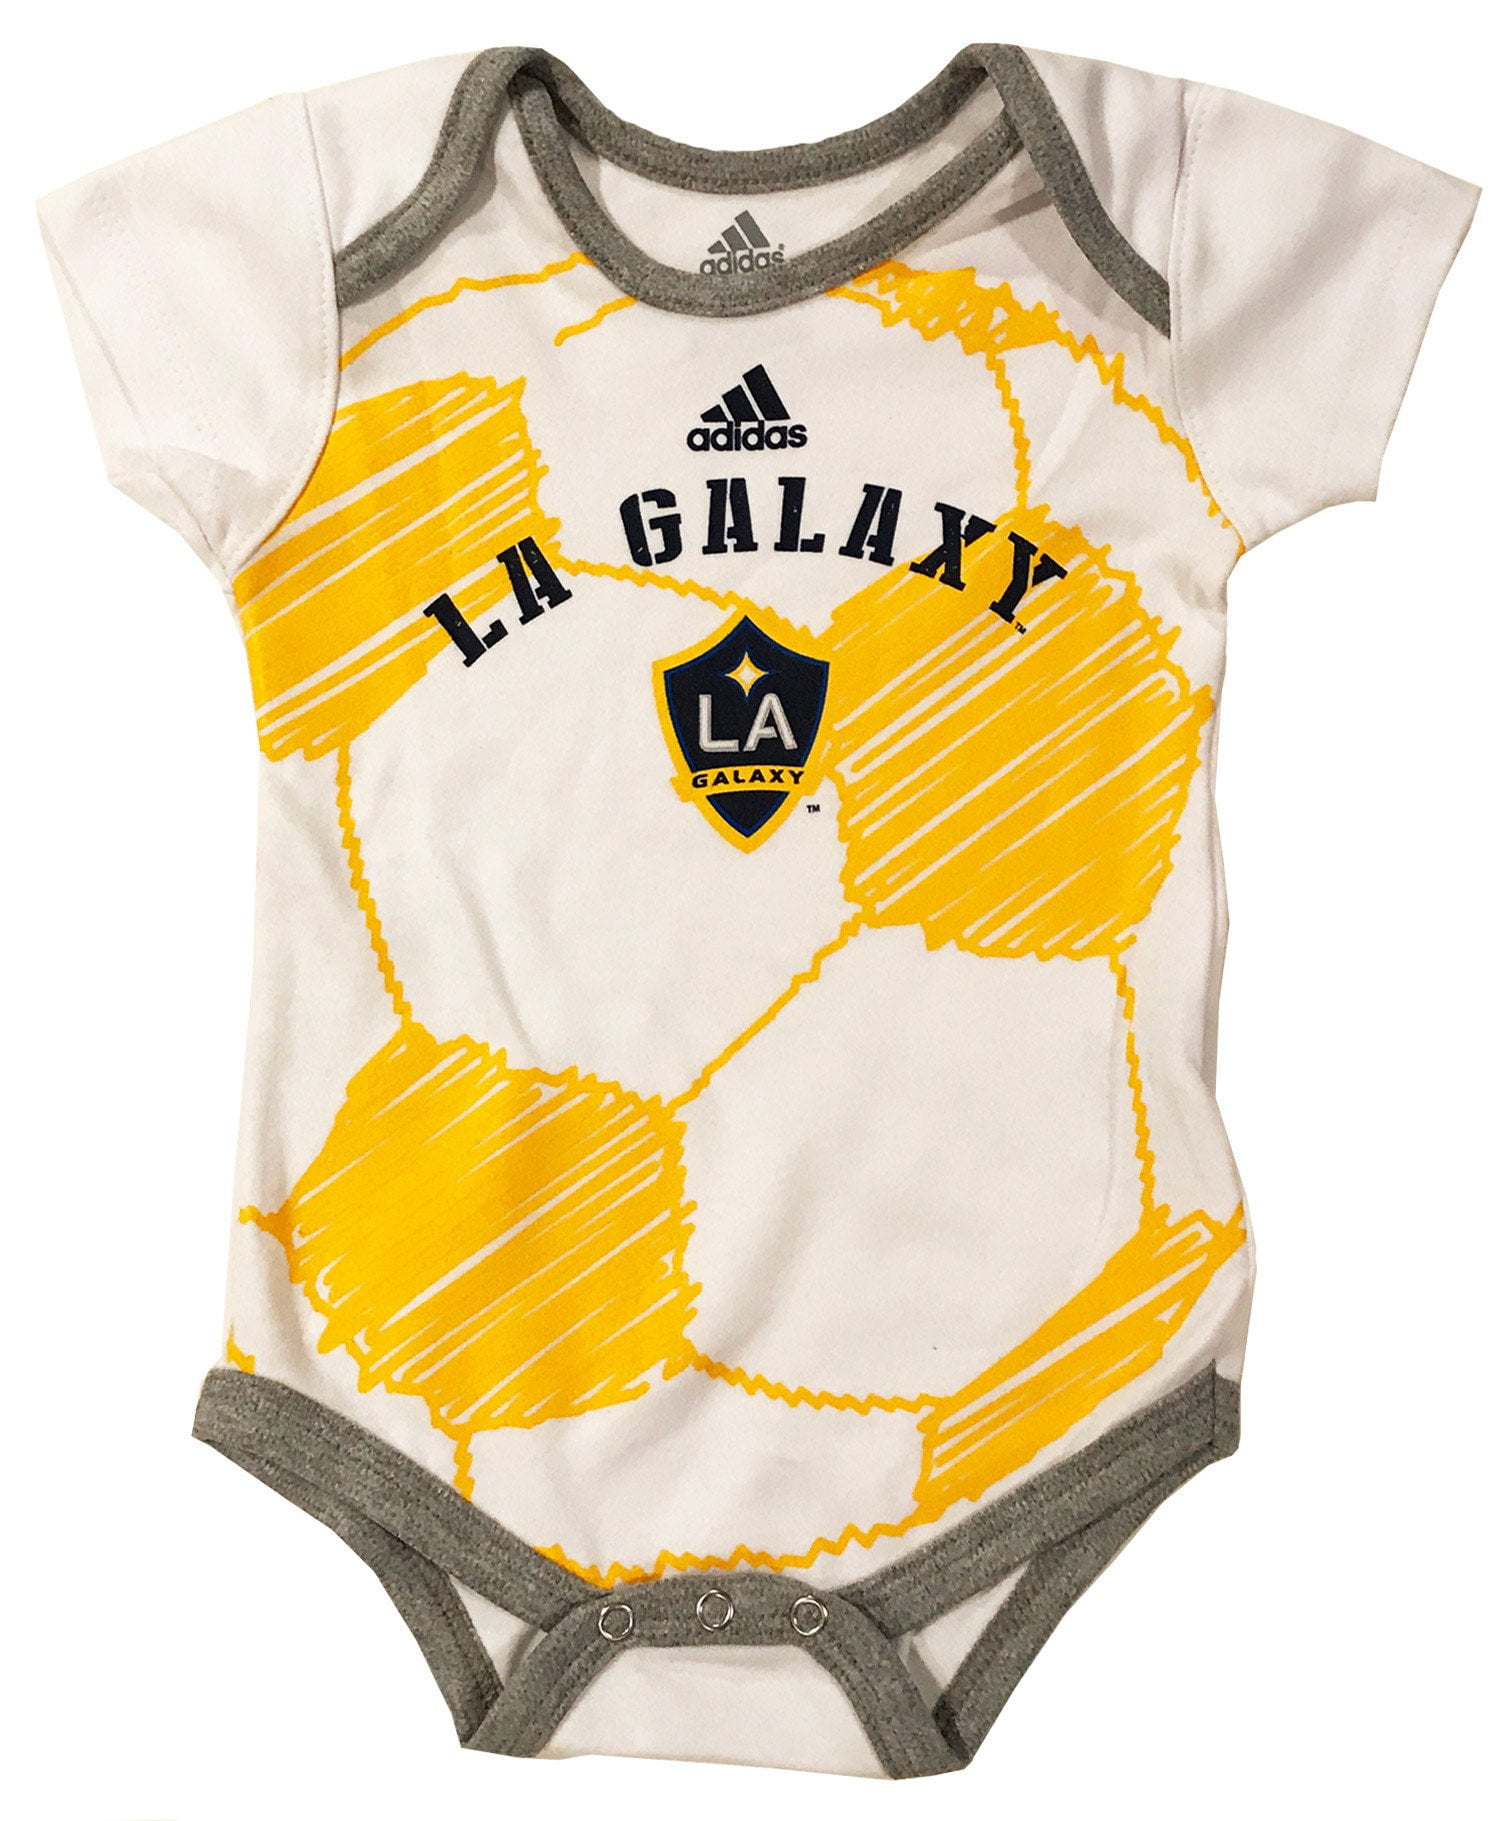 la galaxy baby jersey